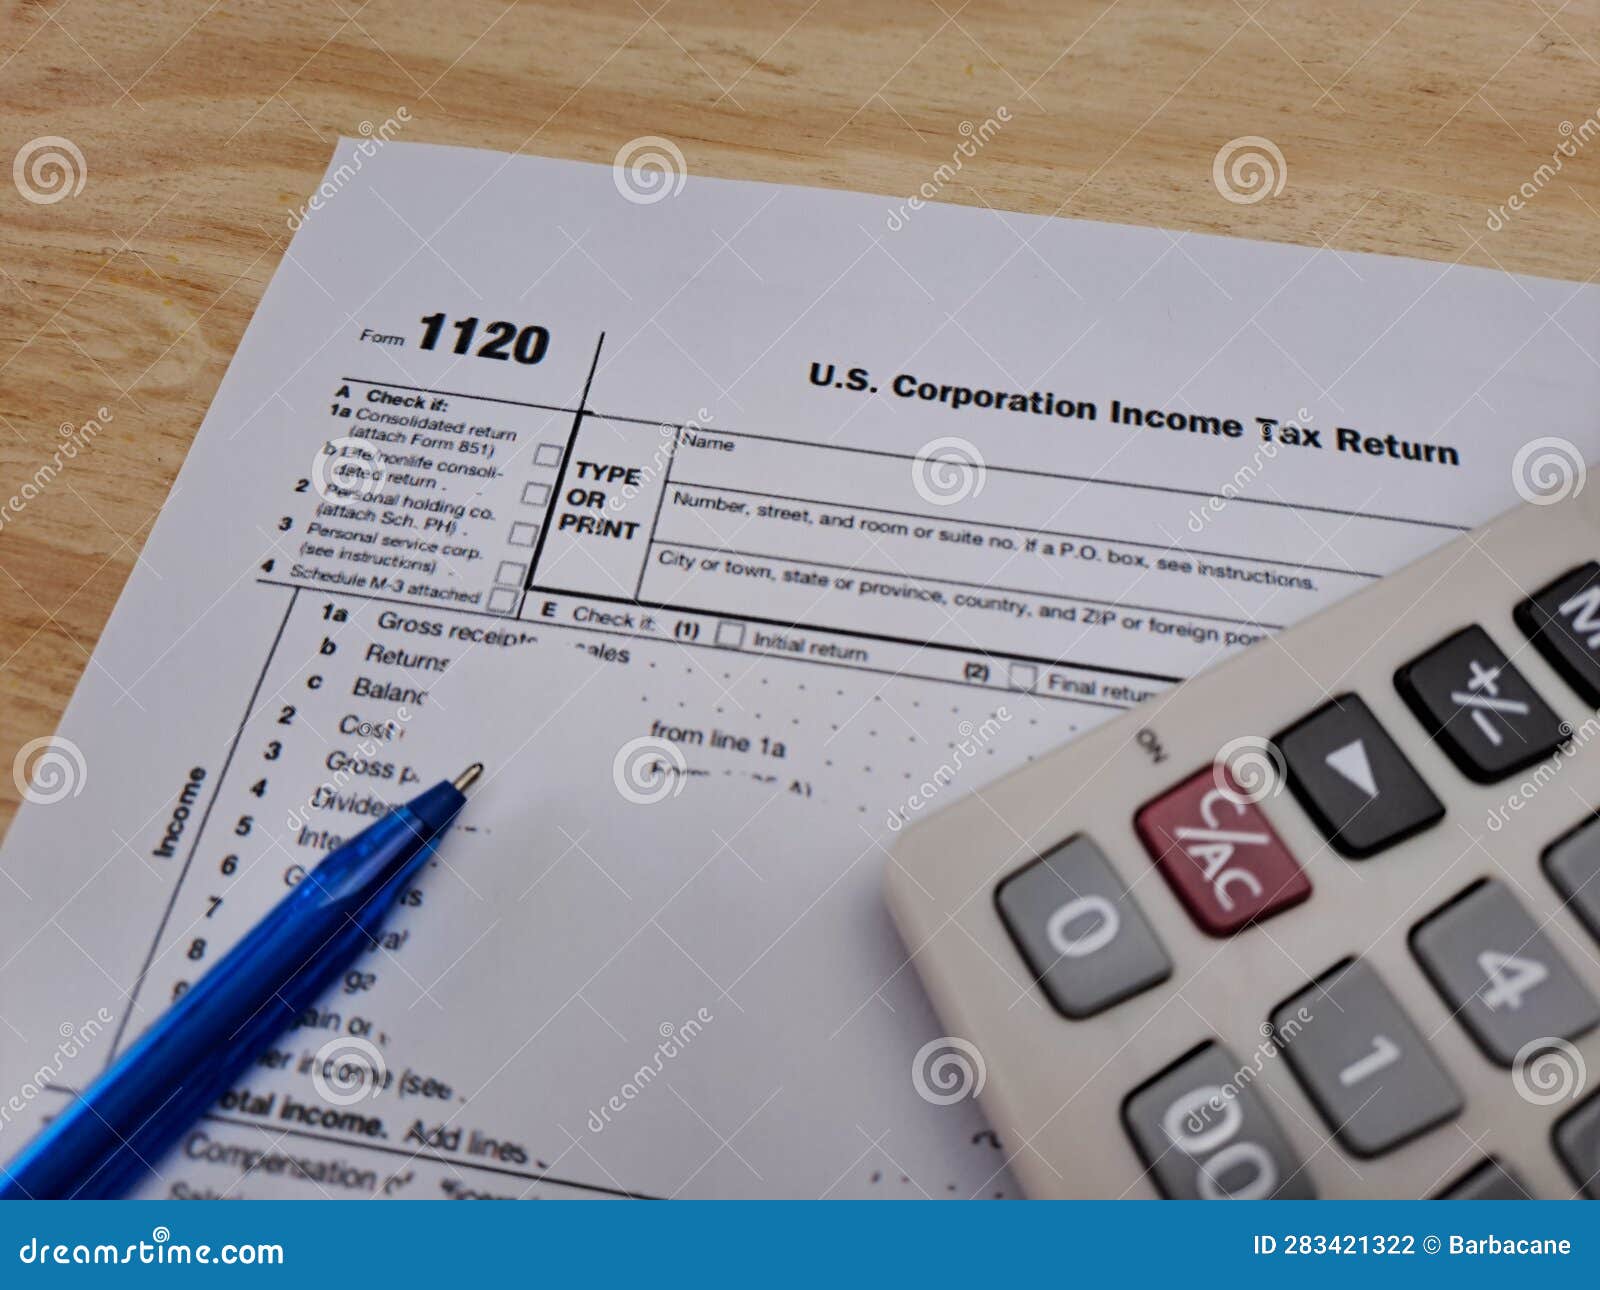 tax return form 1120, us individual tax return